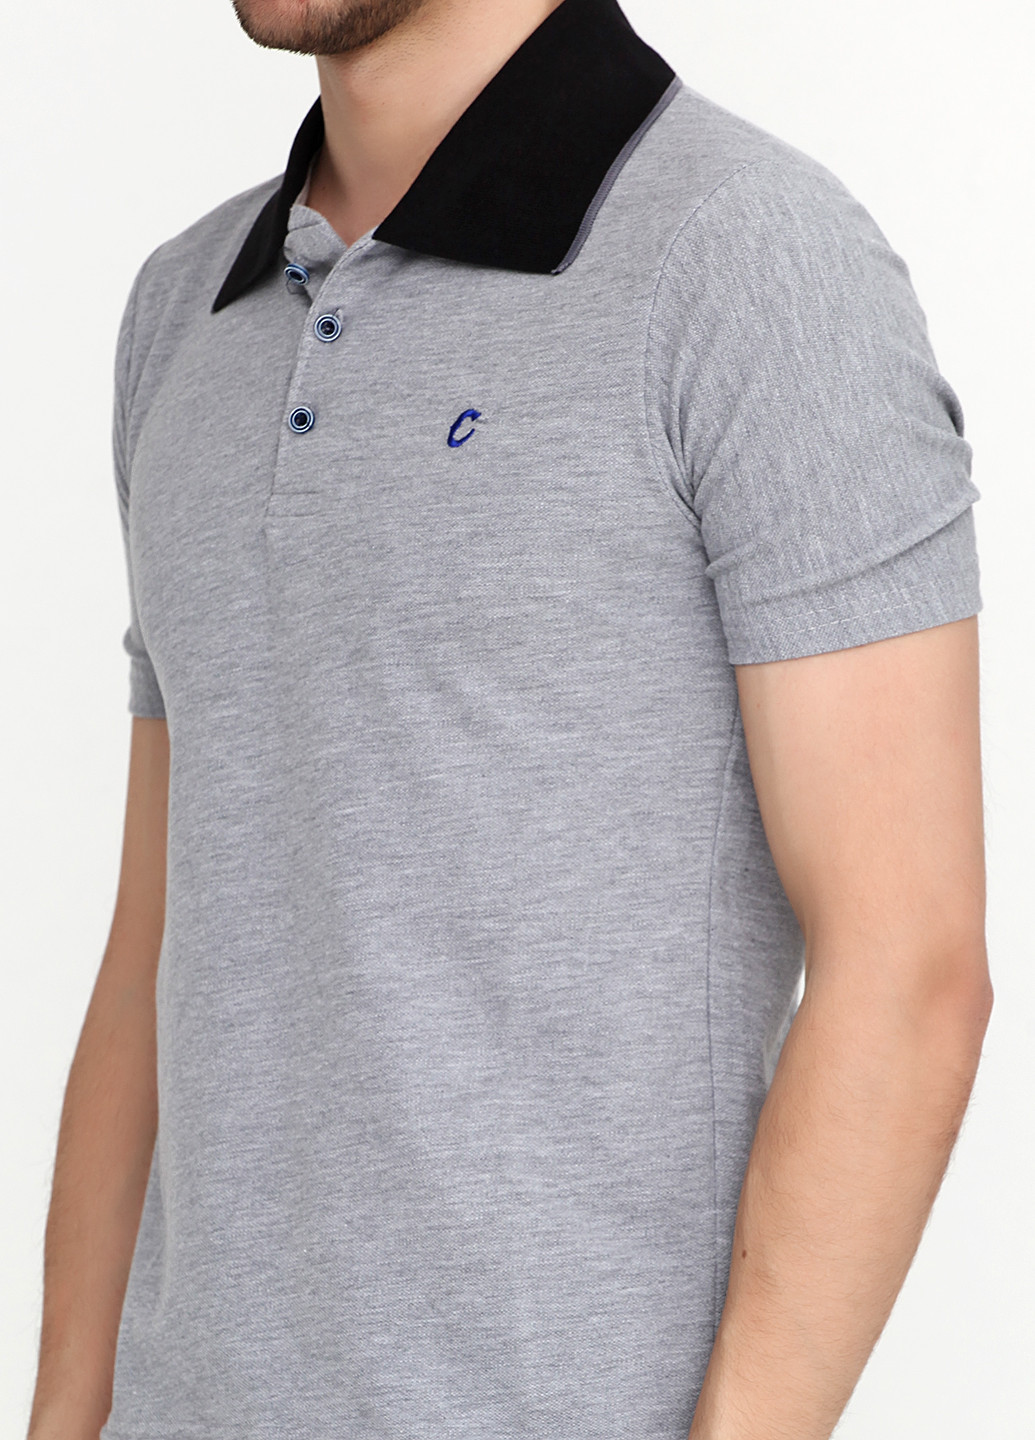 Серая футболка-поло для мужчин Chiarotex с логотипом